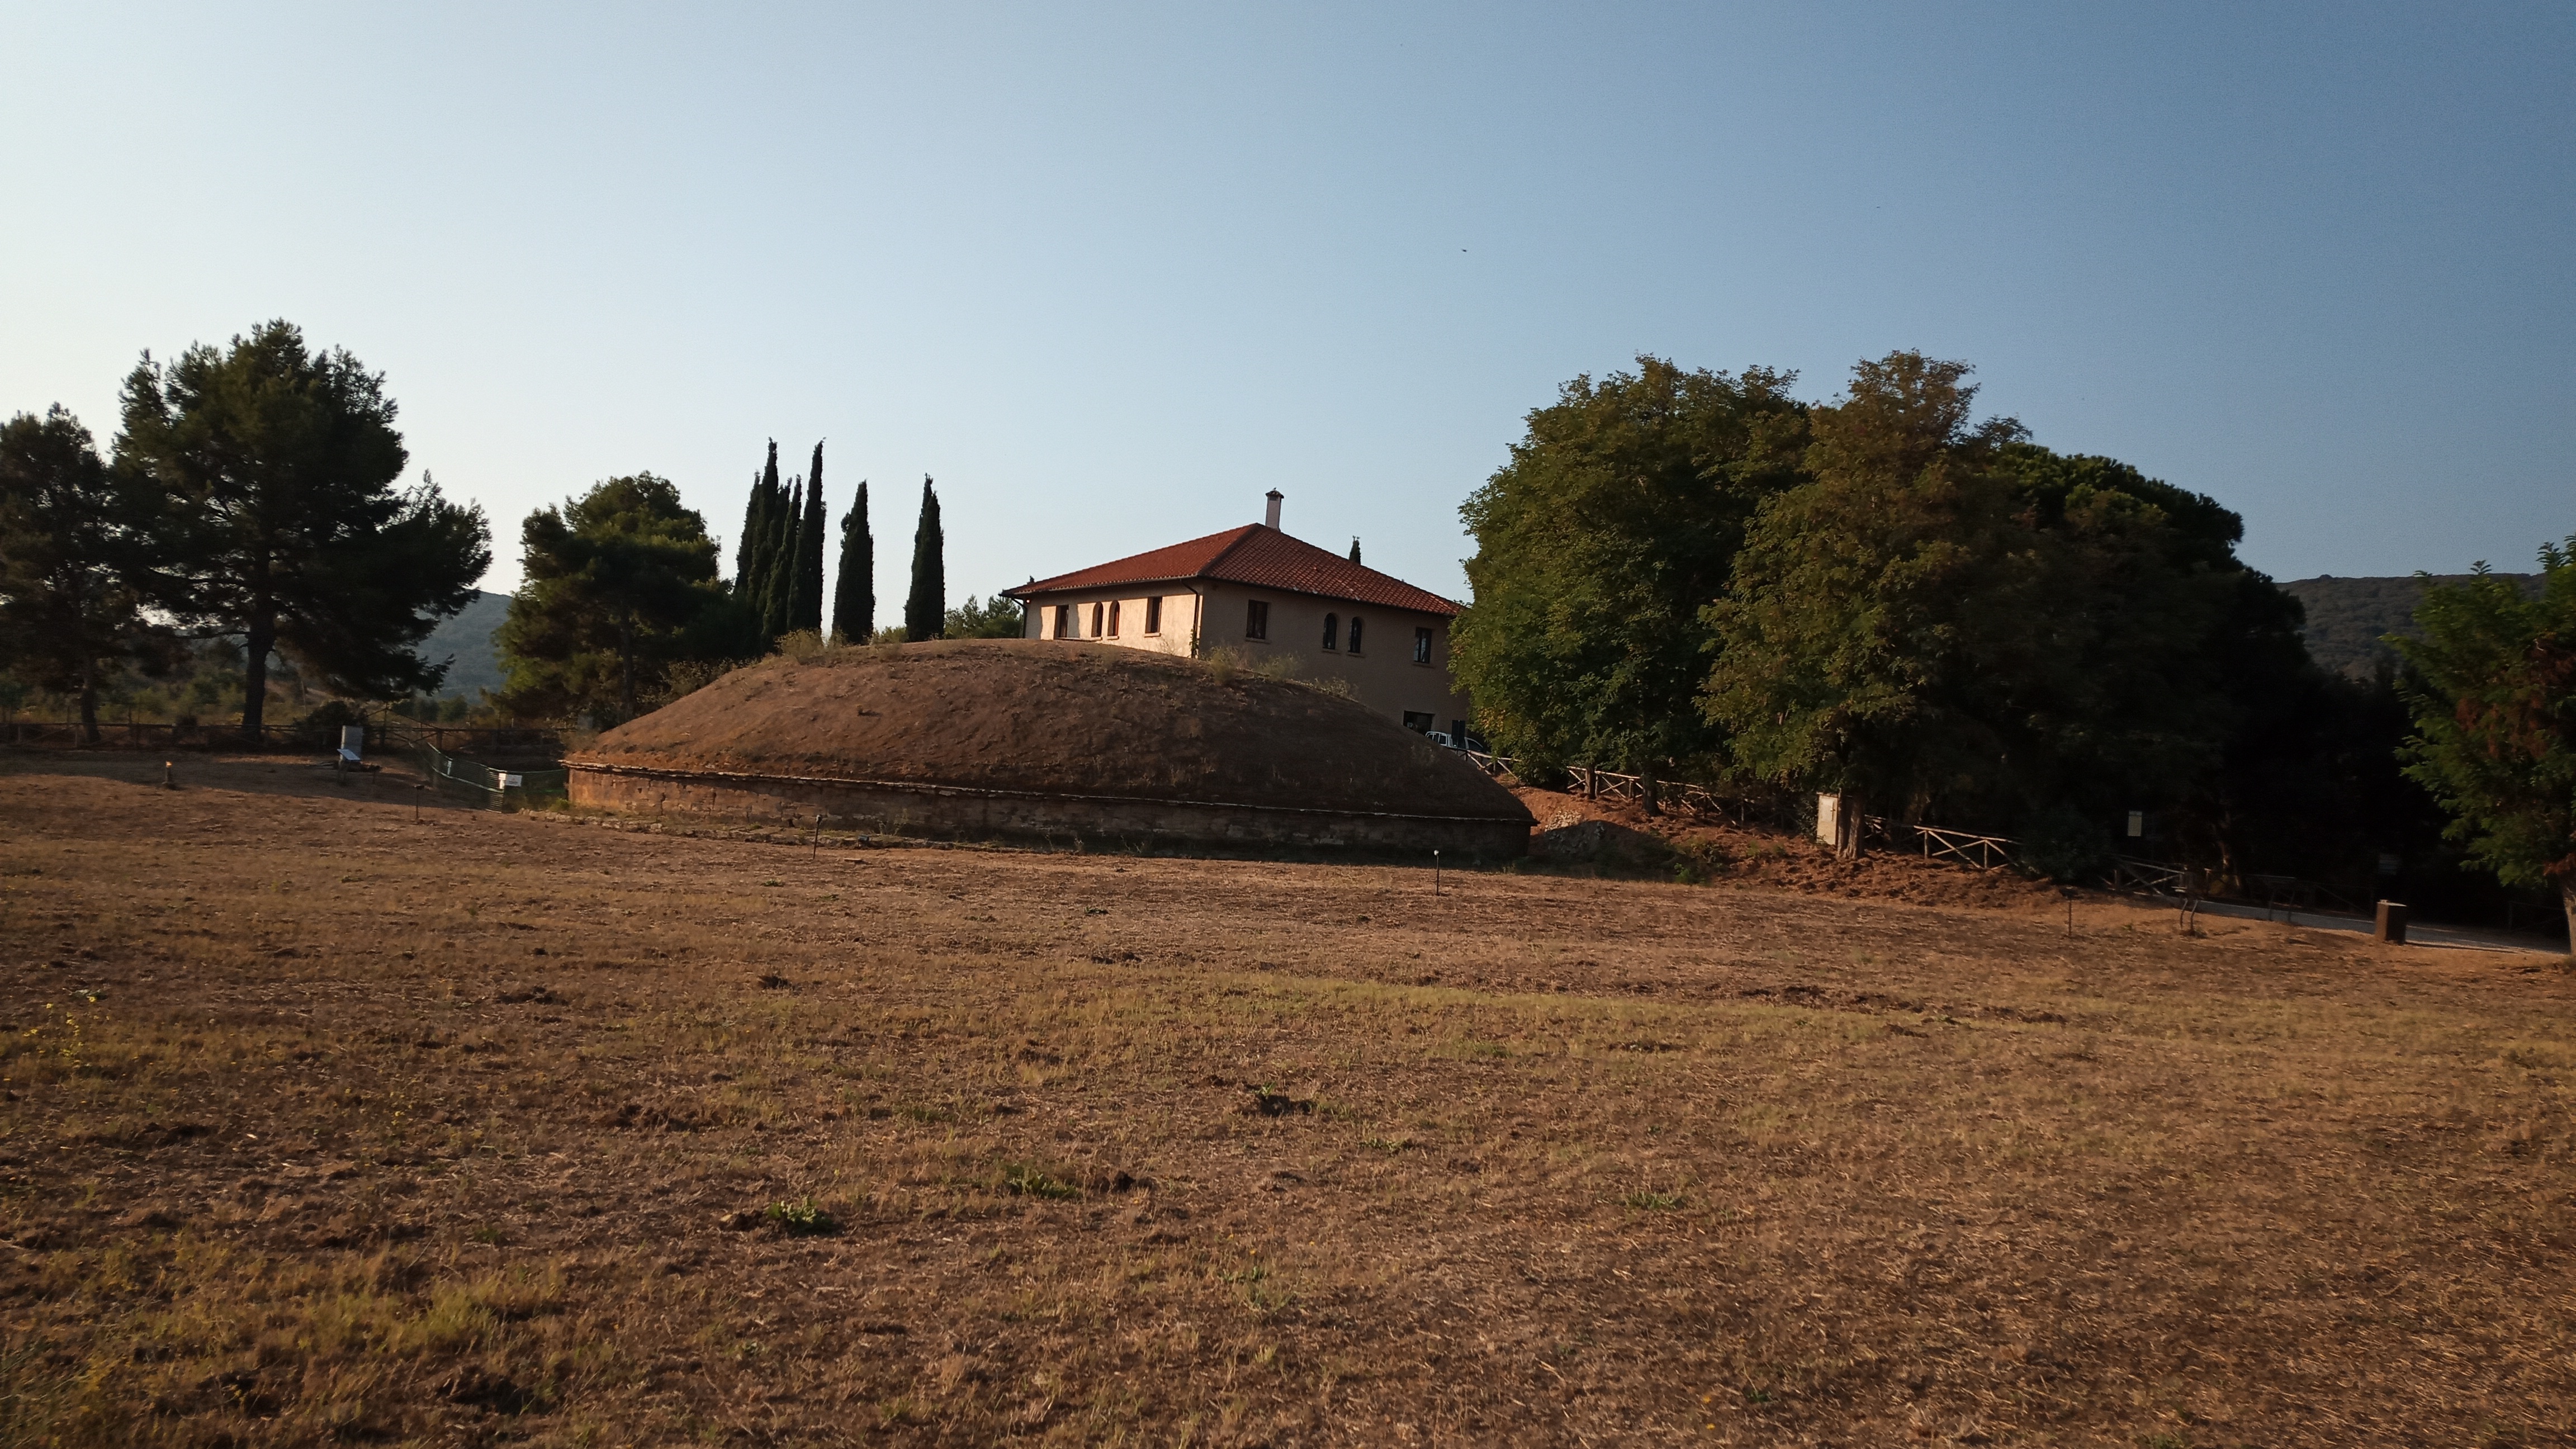 Túmulo funerario etrusco de Populonia